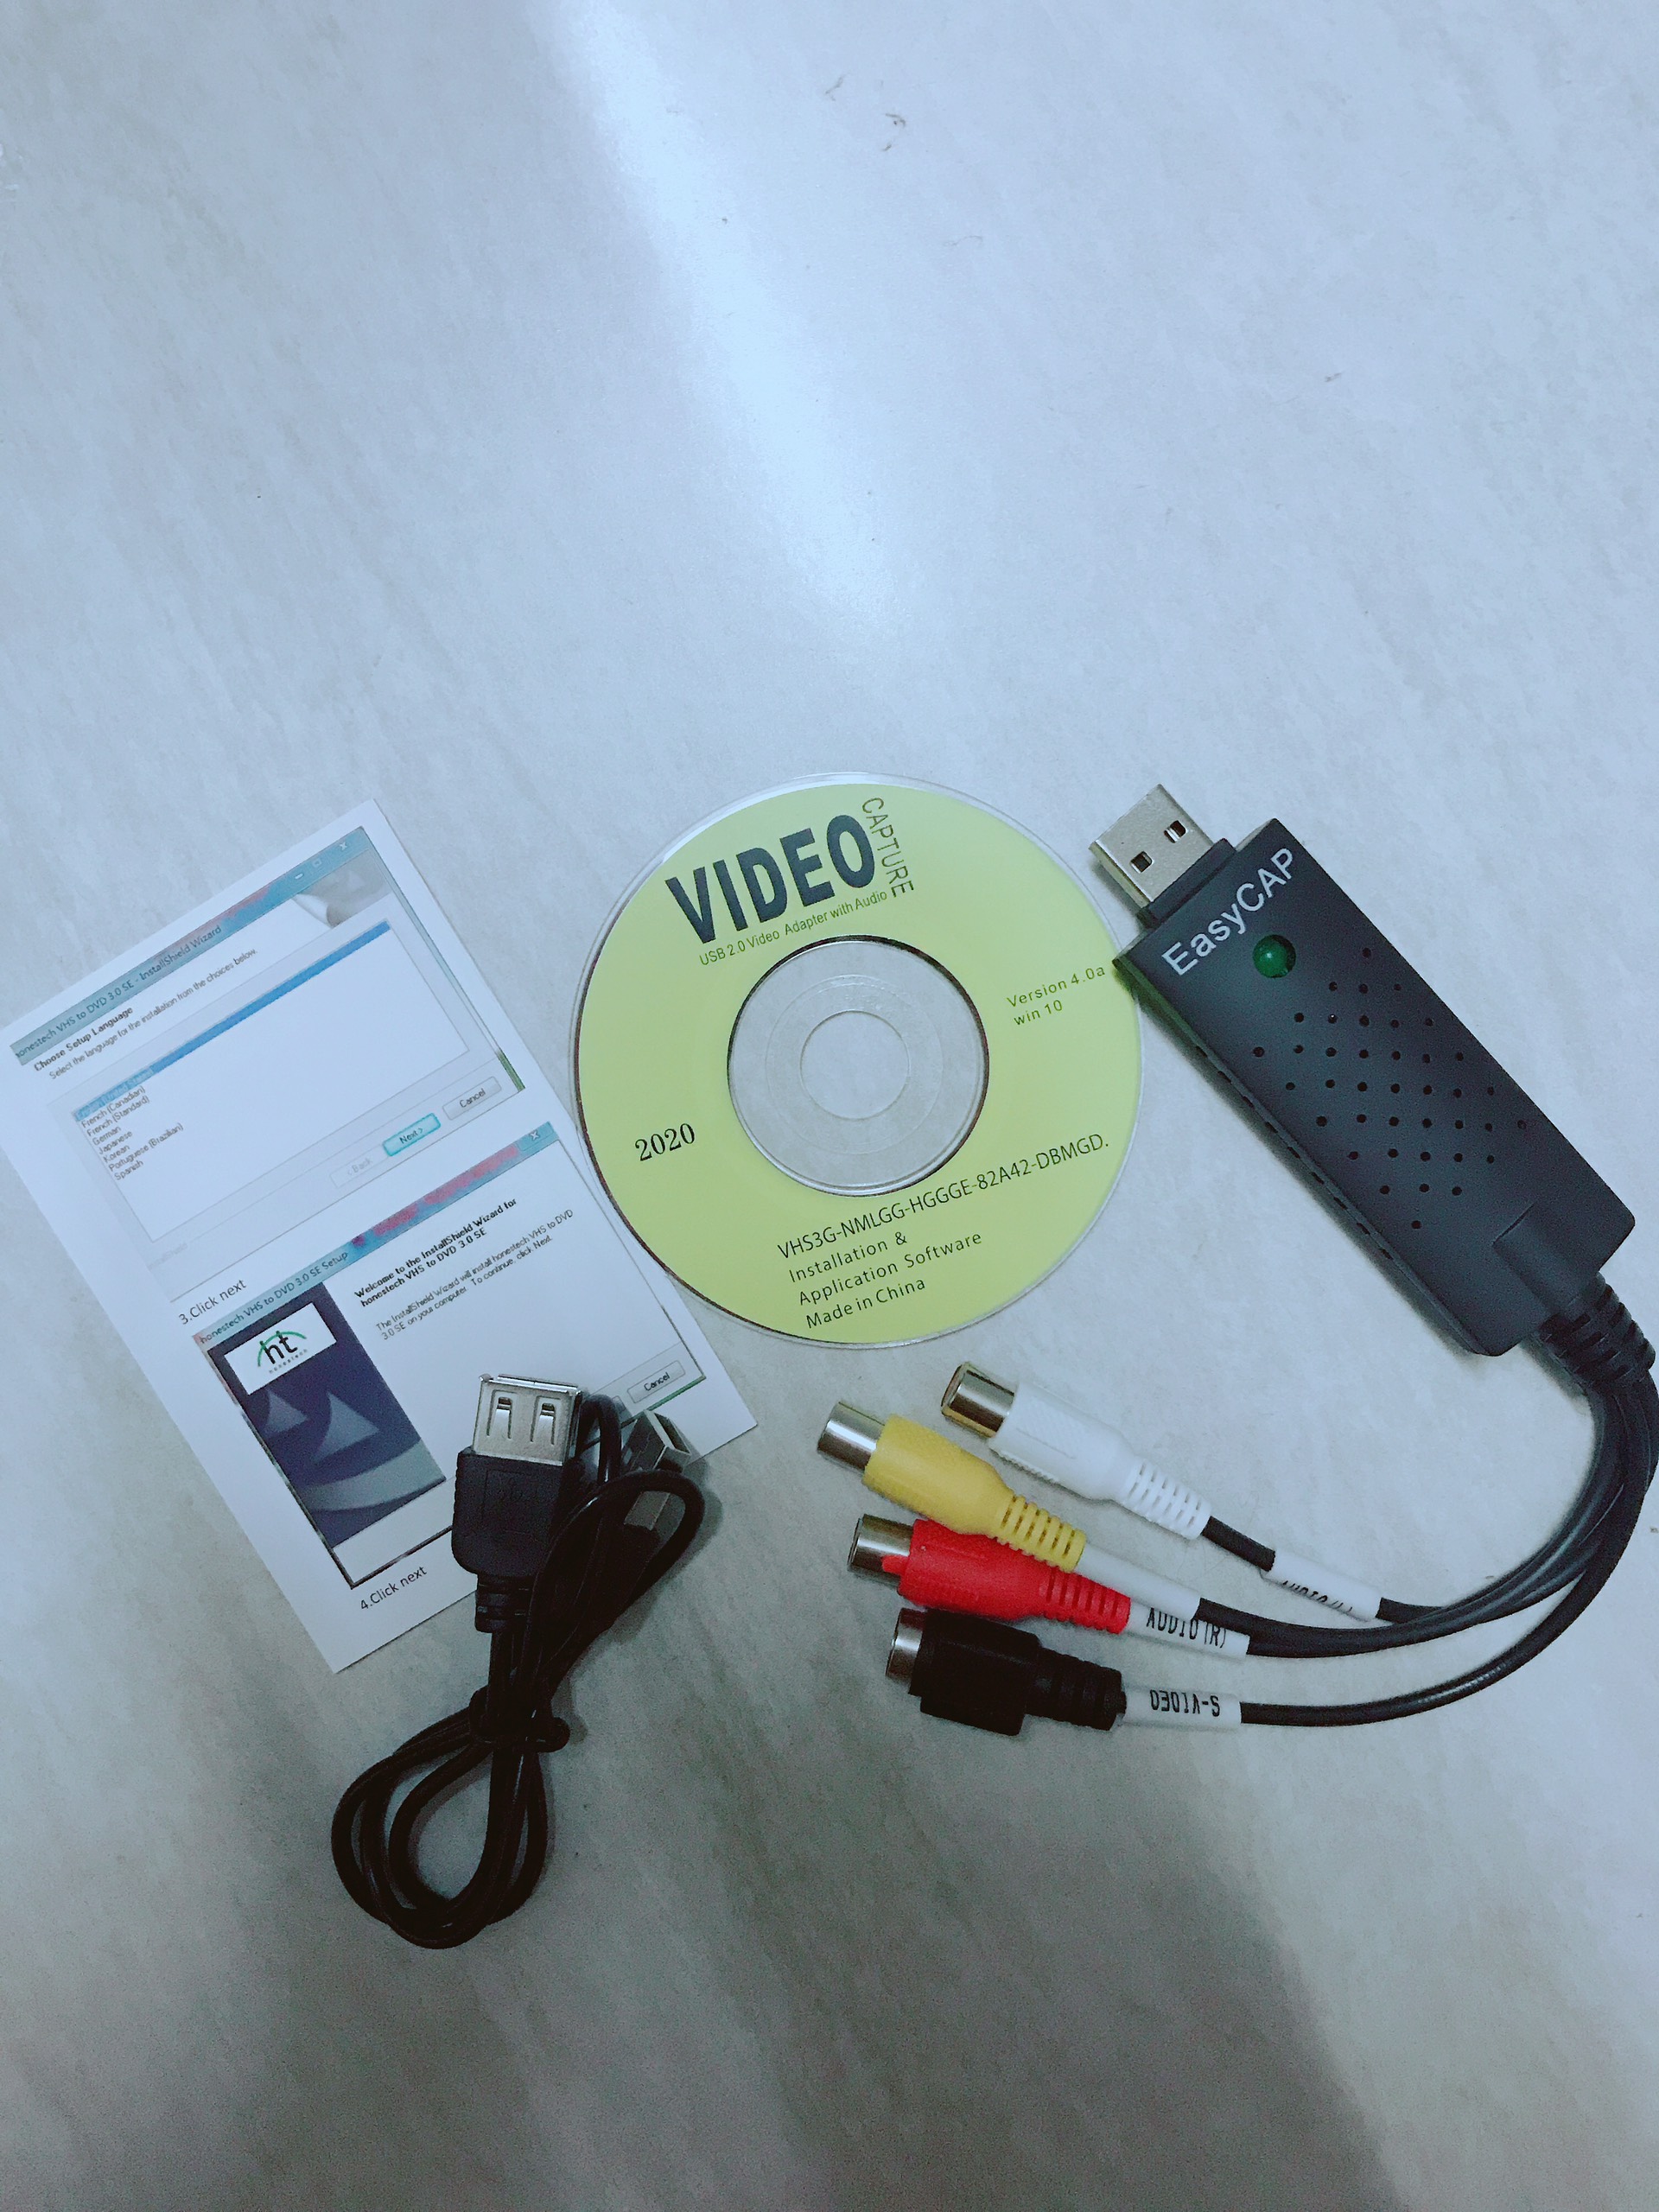 EASYCAP Chuyển từ USB ra AV - Svideo, Lưu hình từ Camera- HÀNG NHẬP KHẨU